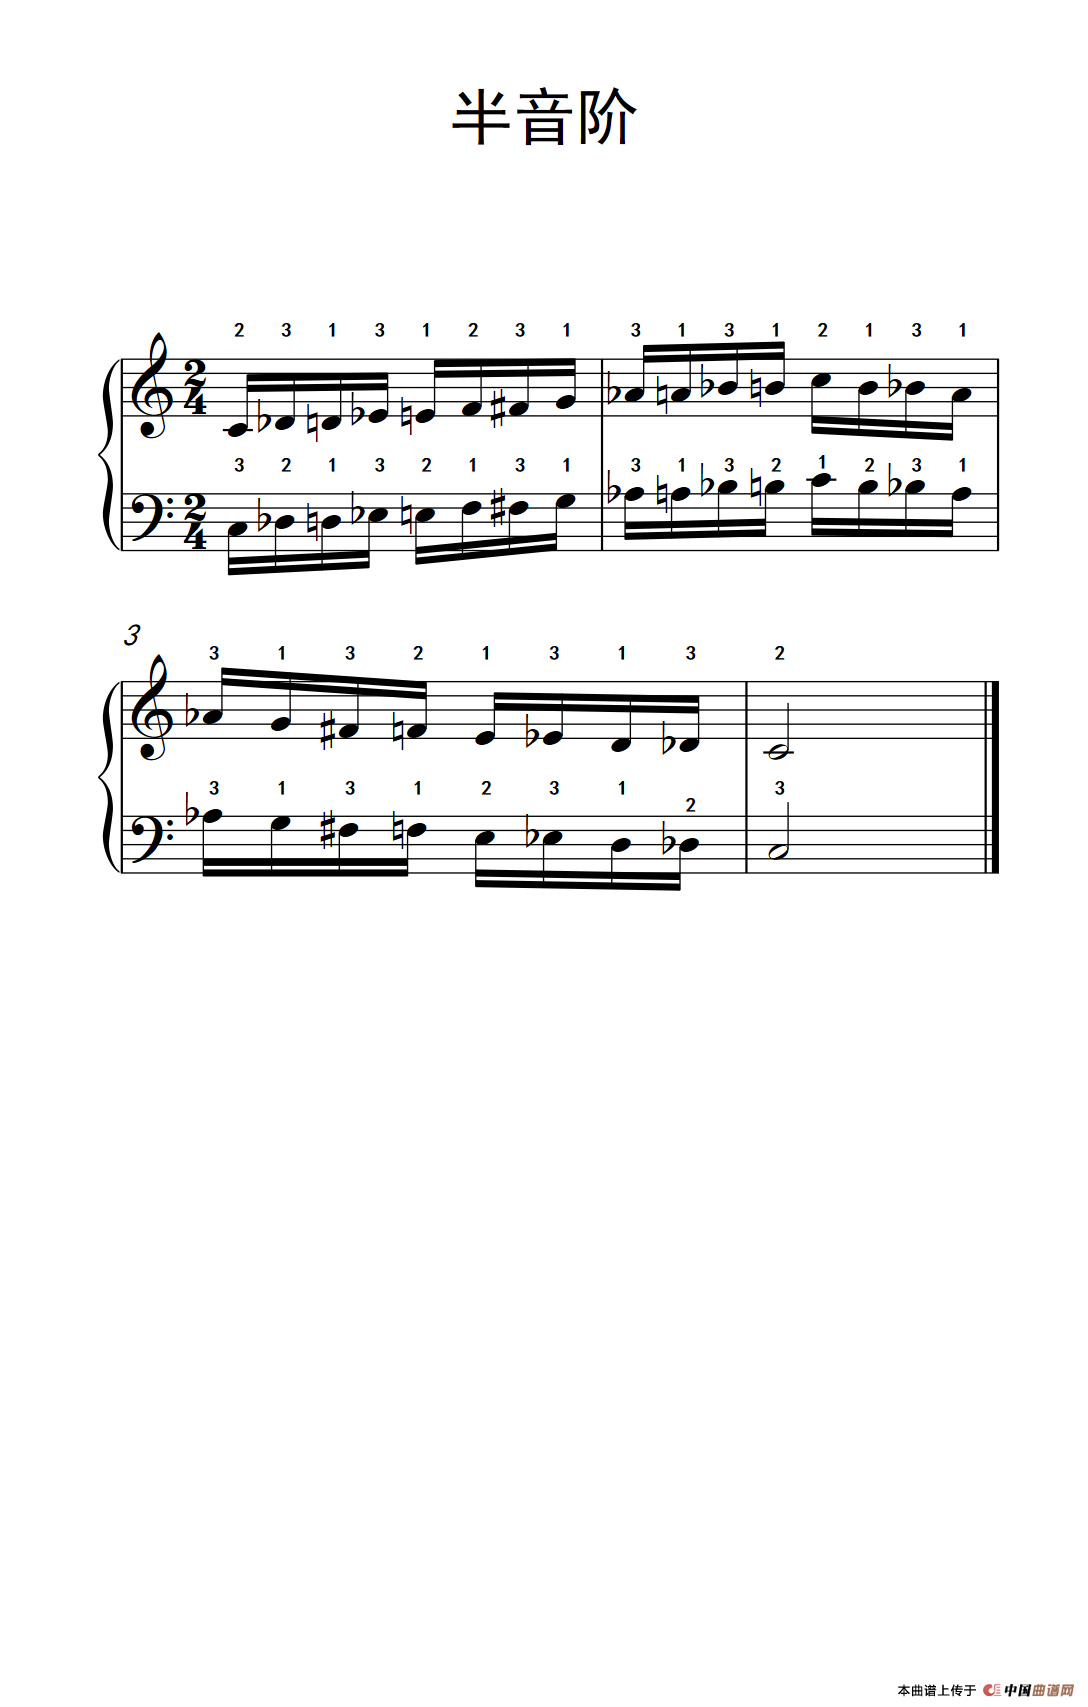 《半音阶》钢琴曲谱图分享